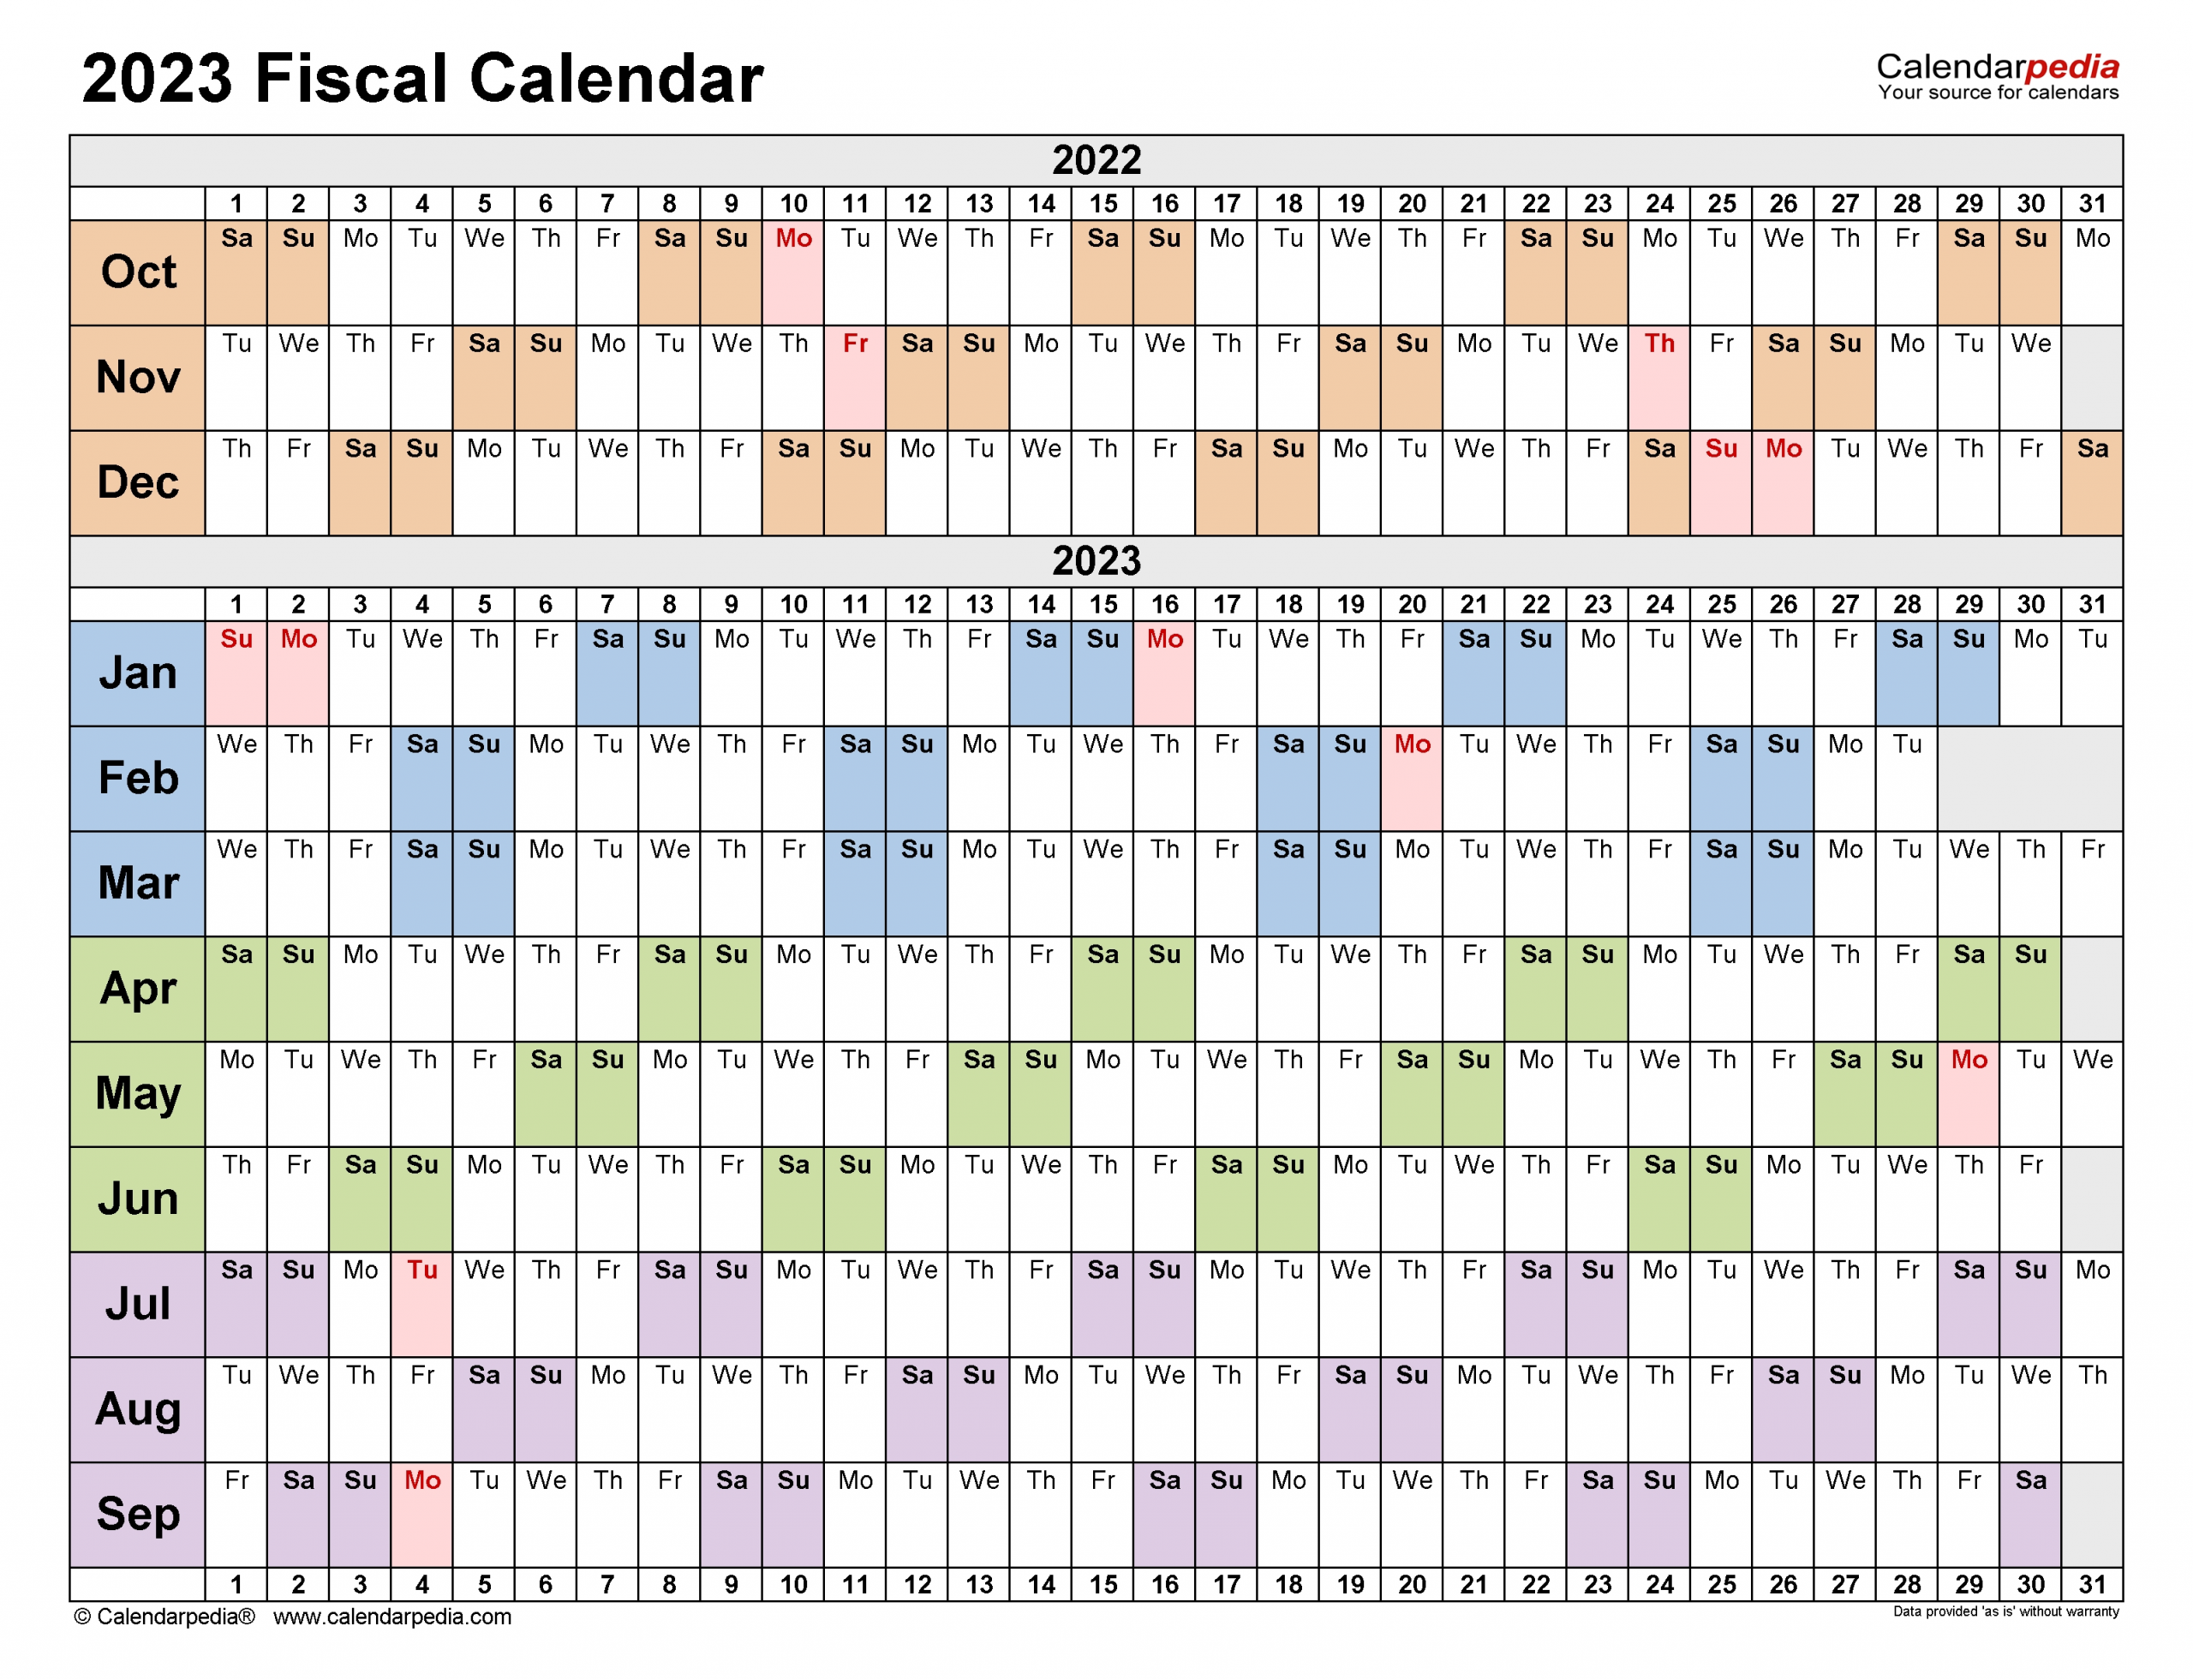 Government 2023 Fiscal Calendar Calendar Inspiration Design